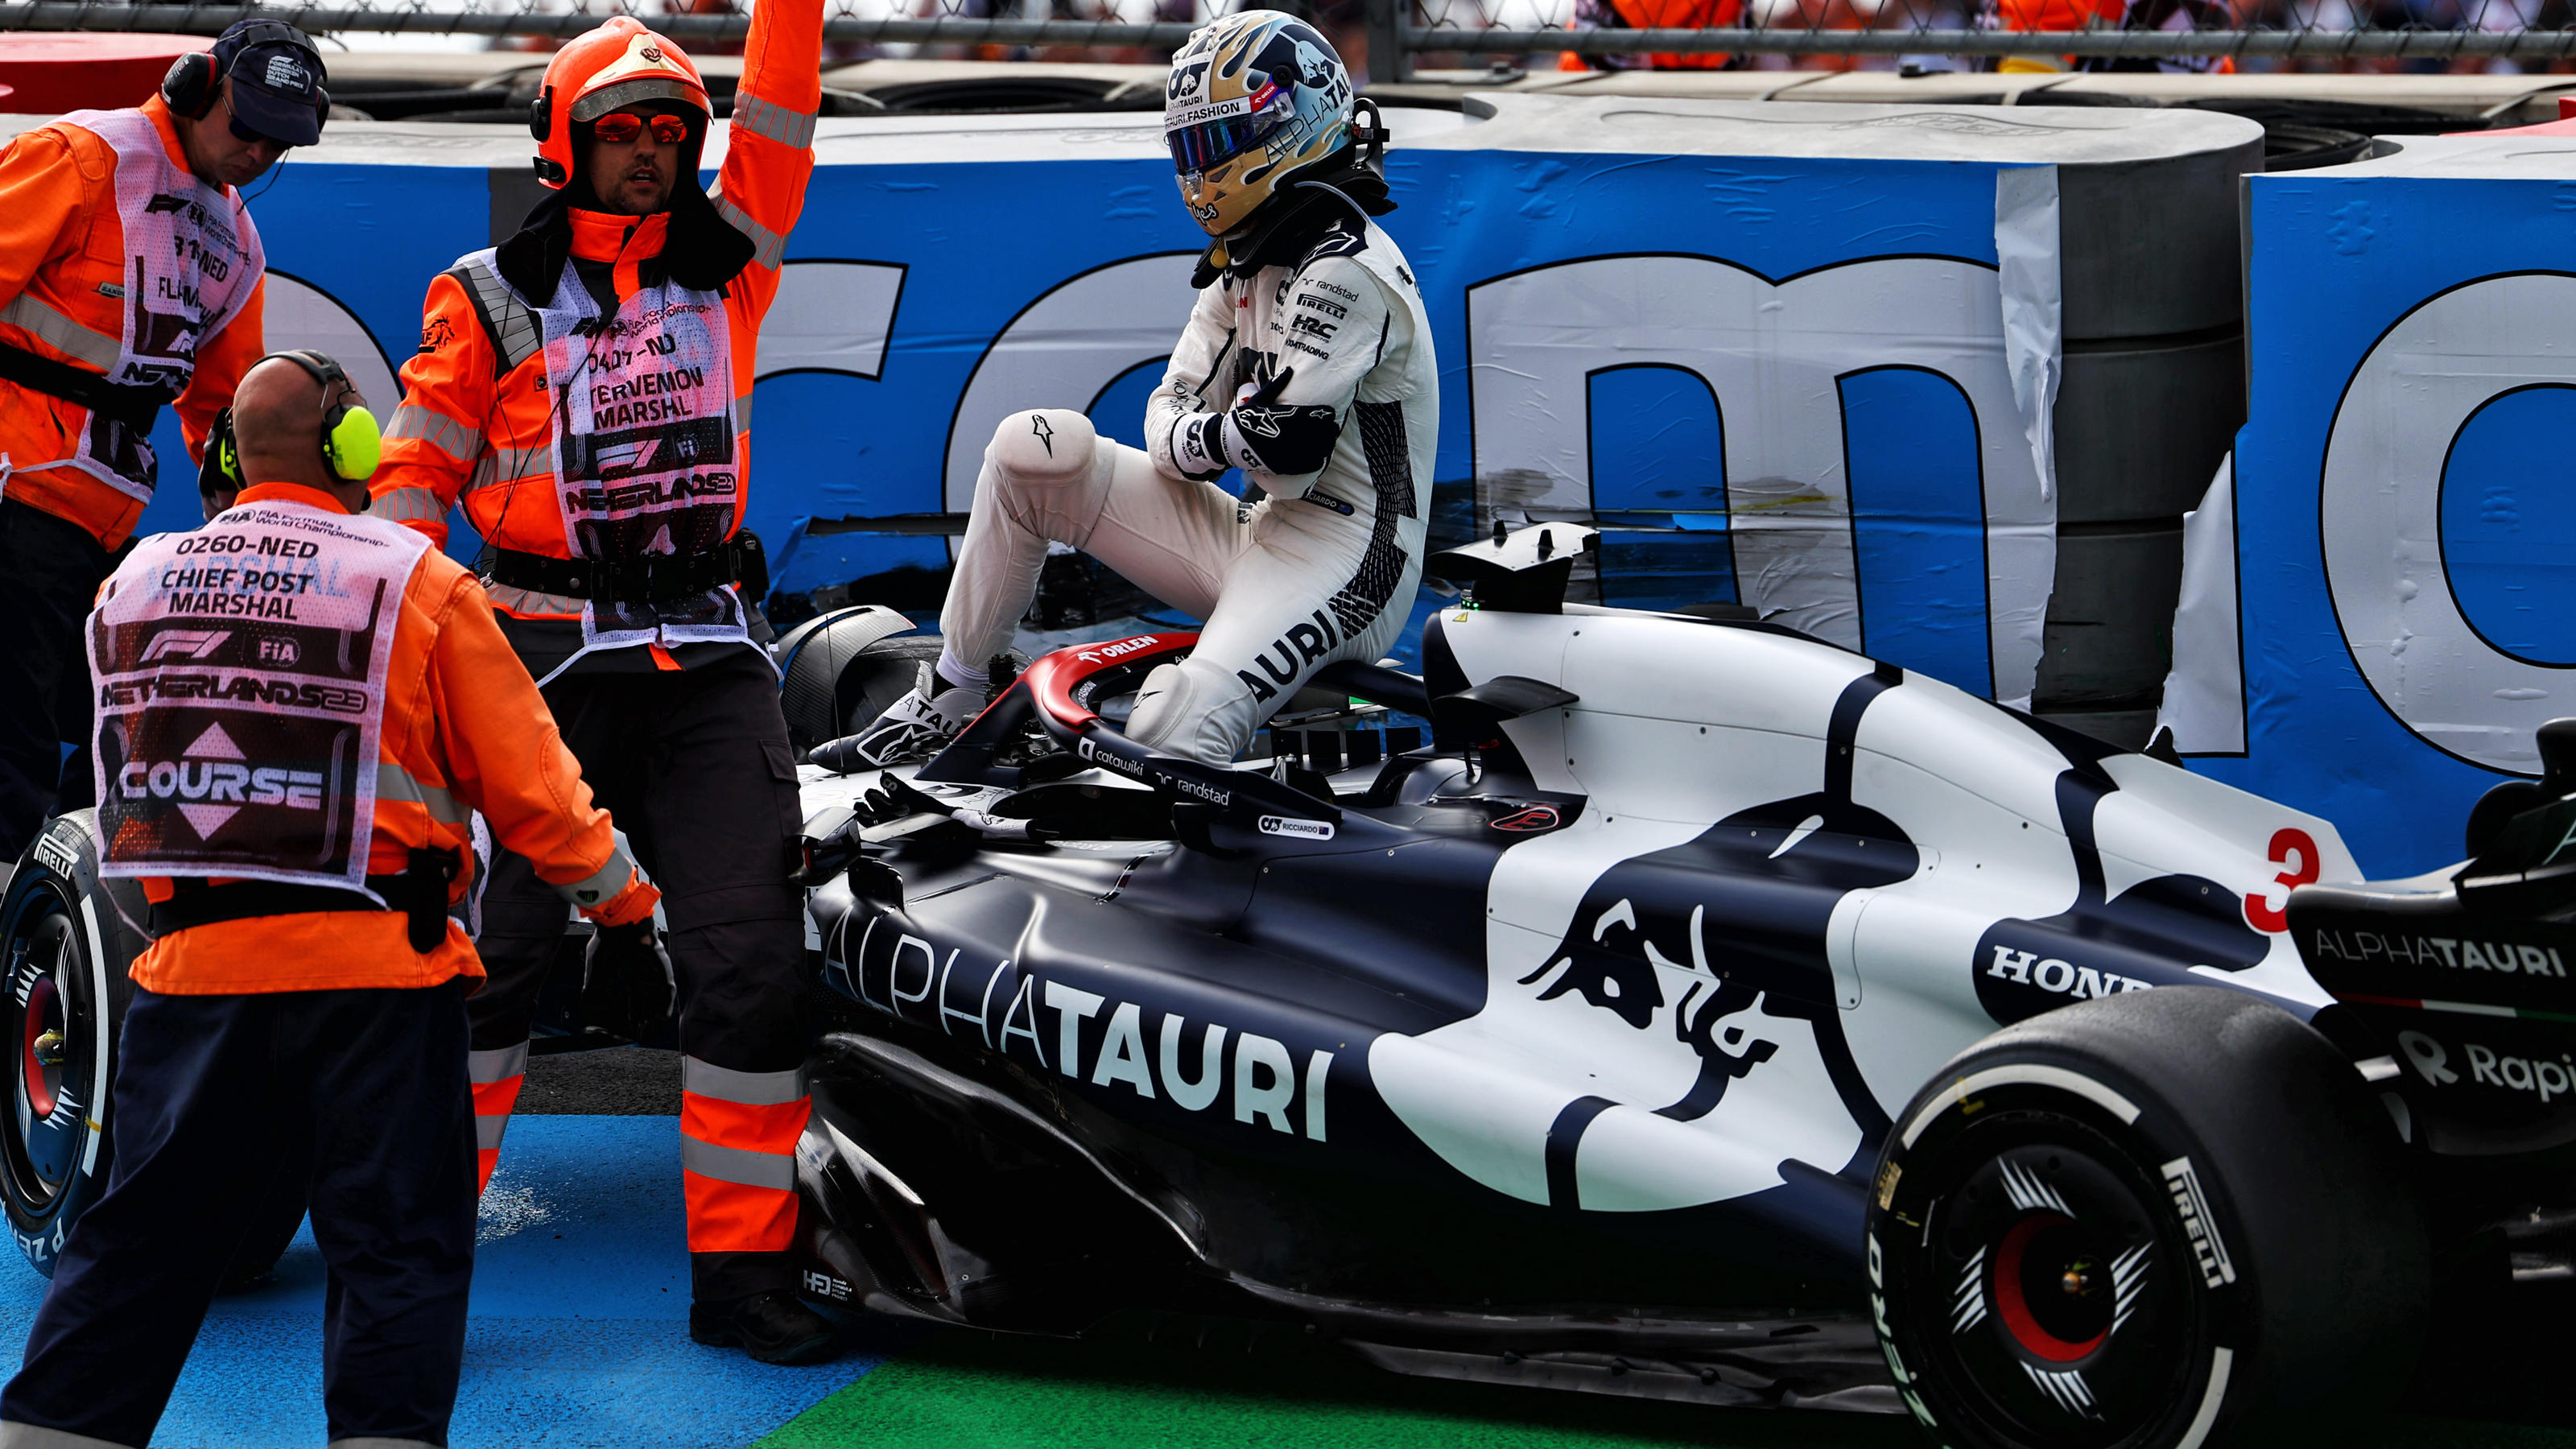 Kein Start beim Holland-GP Formel-1-Star Daniel Ricciardo muss nach Crash ins Krankenhaus